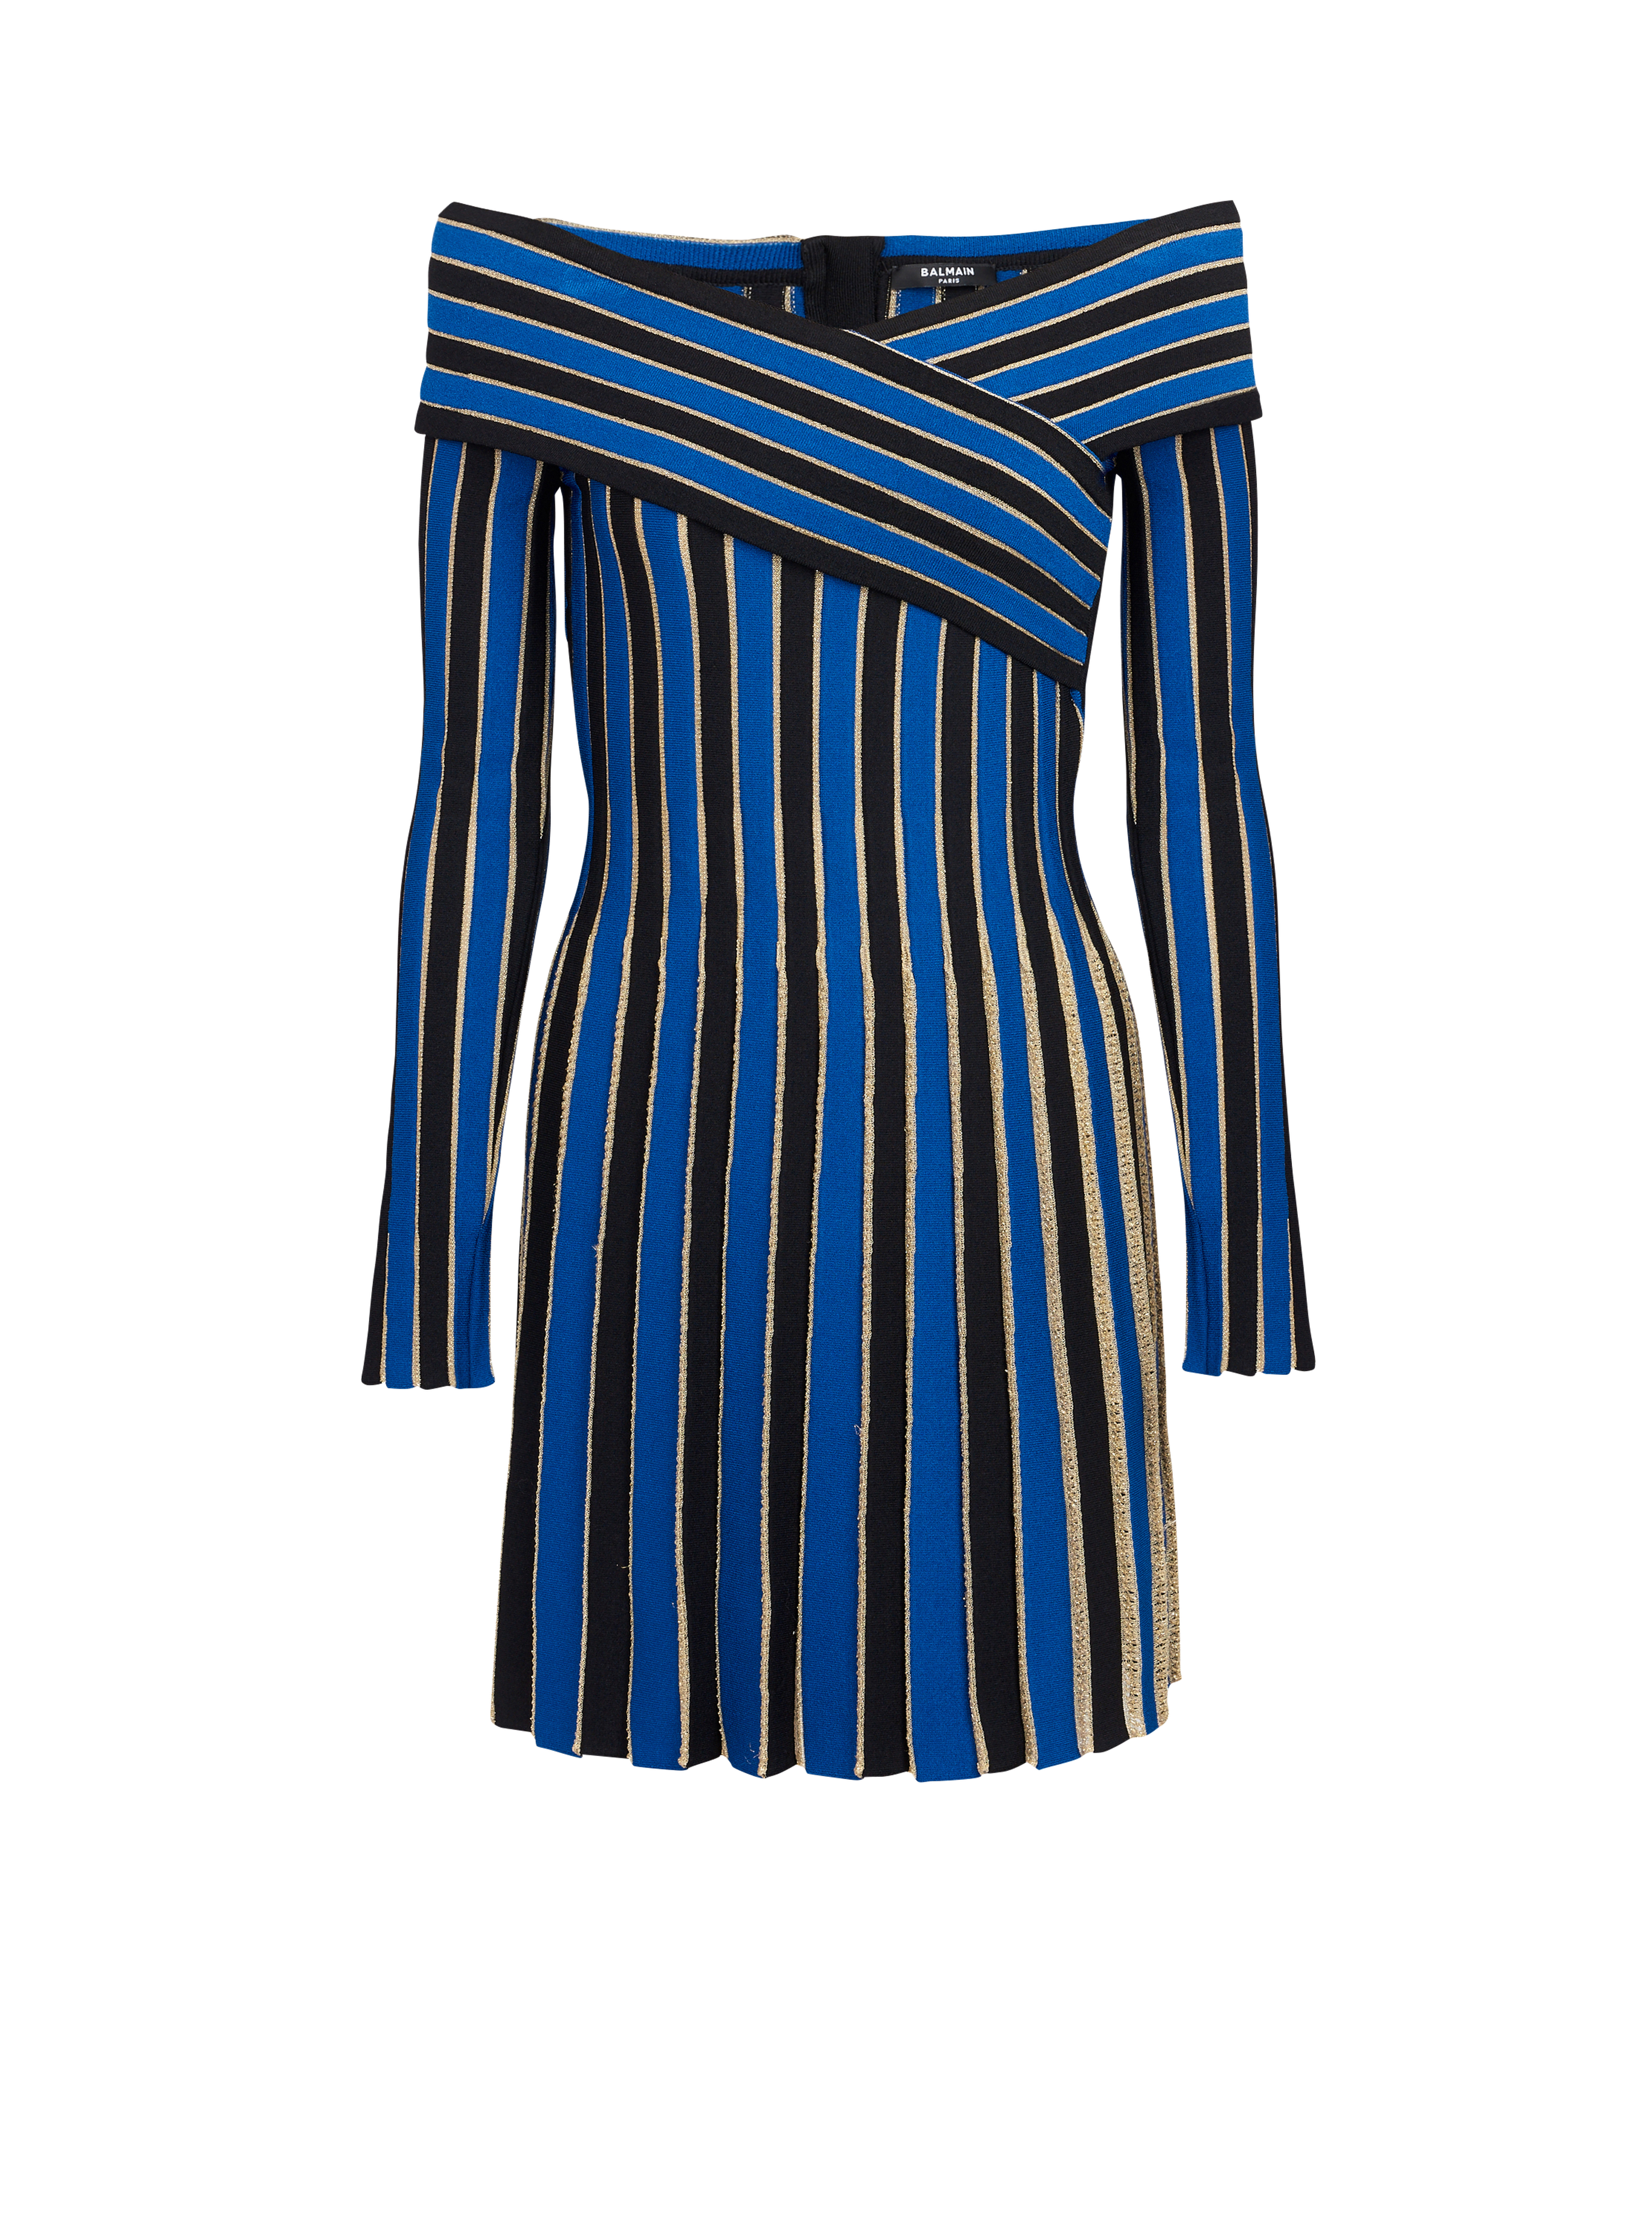 Metallic striped knit dress, blue